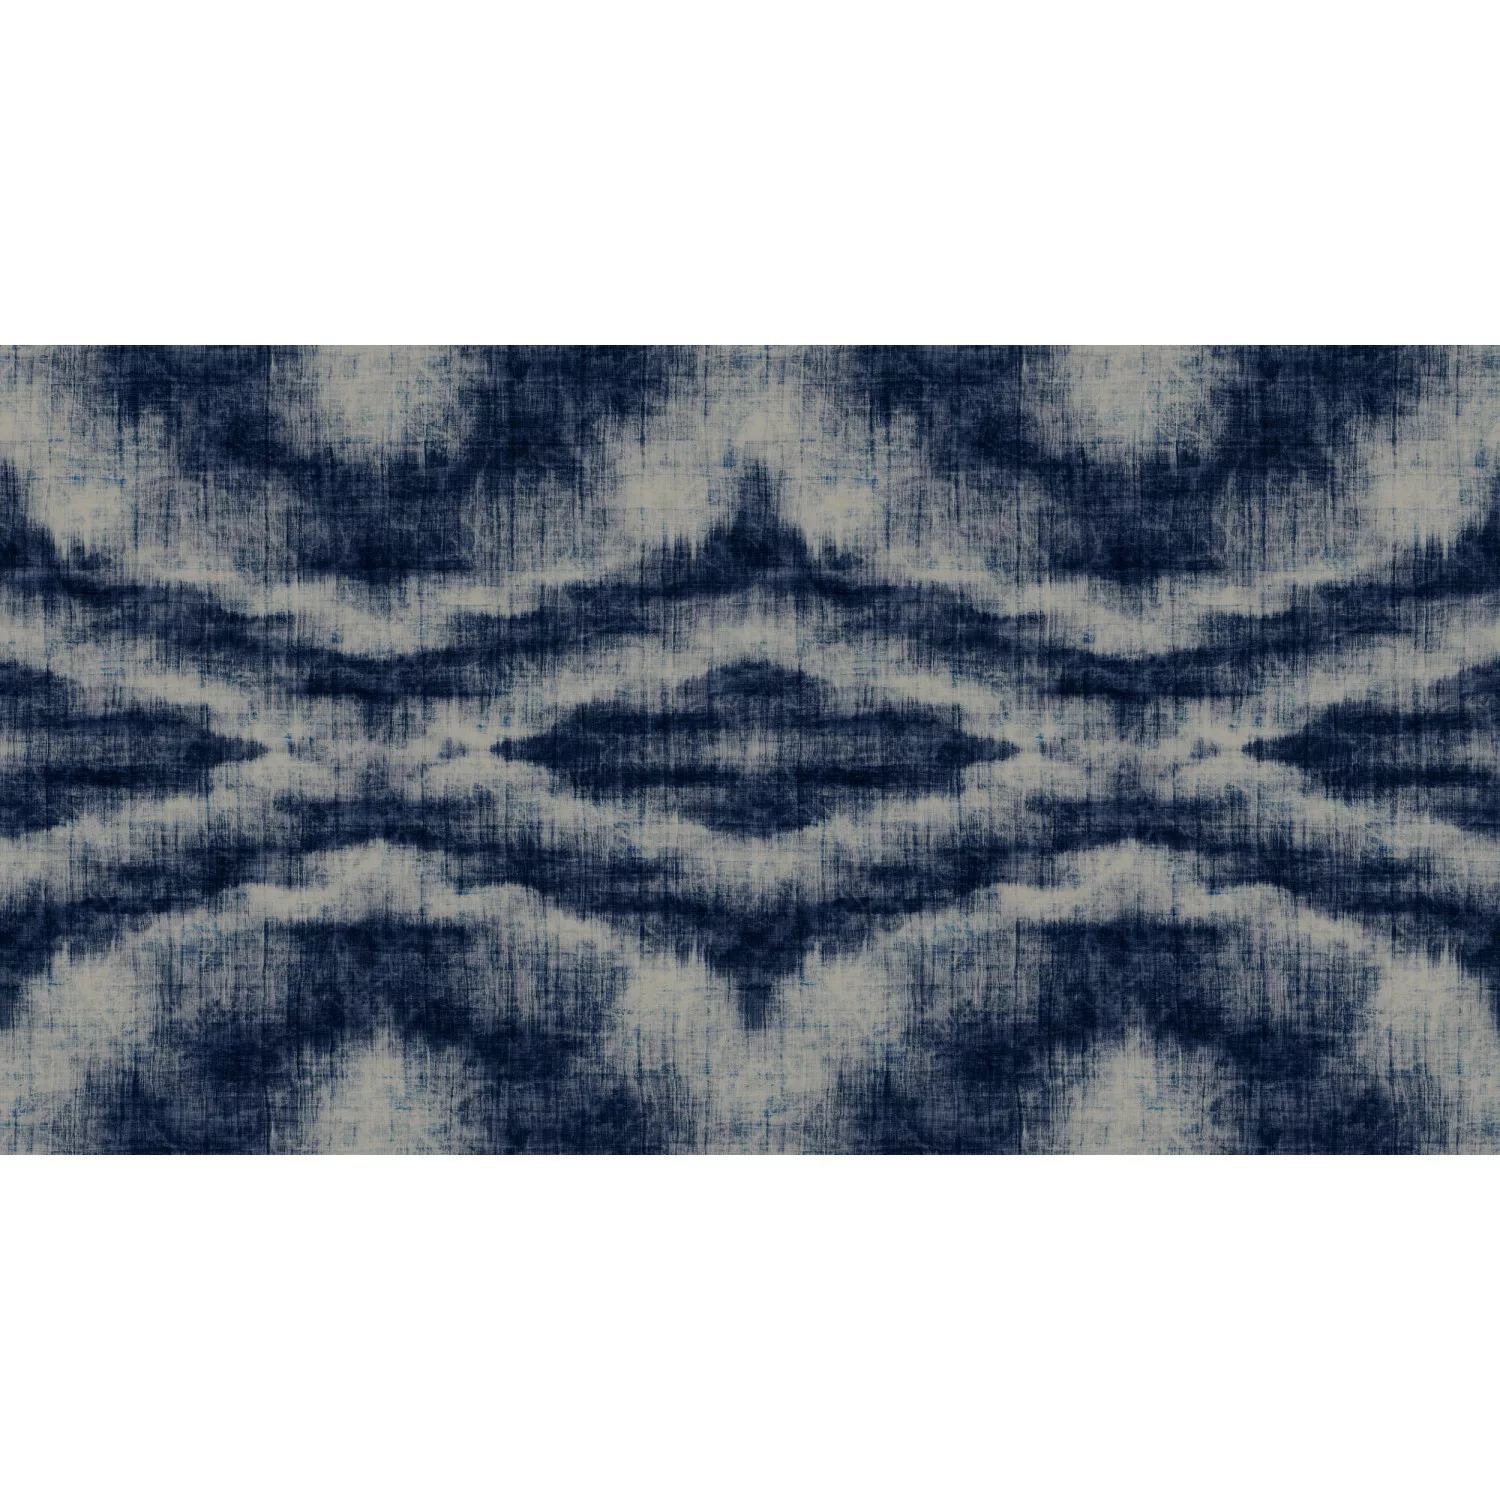 Fototapete Grafik Muster Abstrakt Indigo Blau Grau 5,00 m x 2,70 m FSC® günstig online kaufen